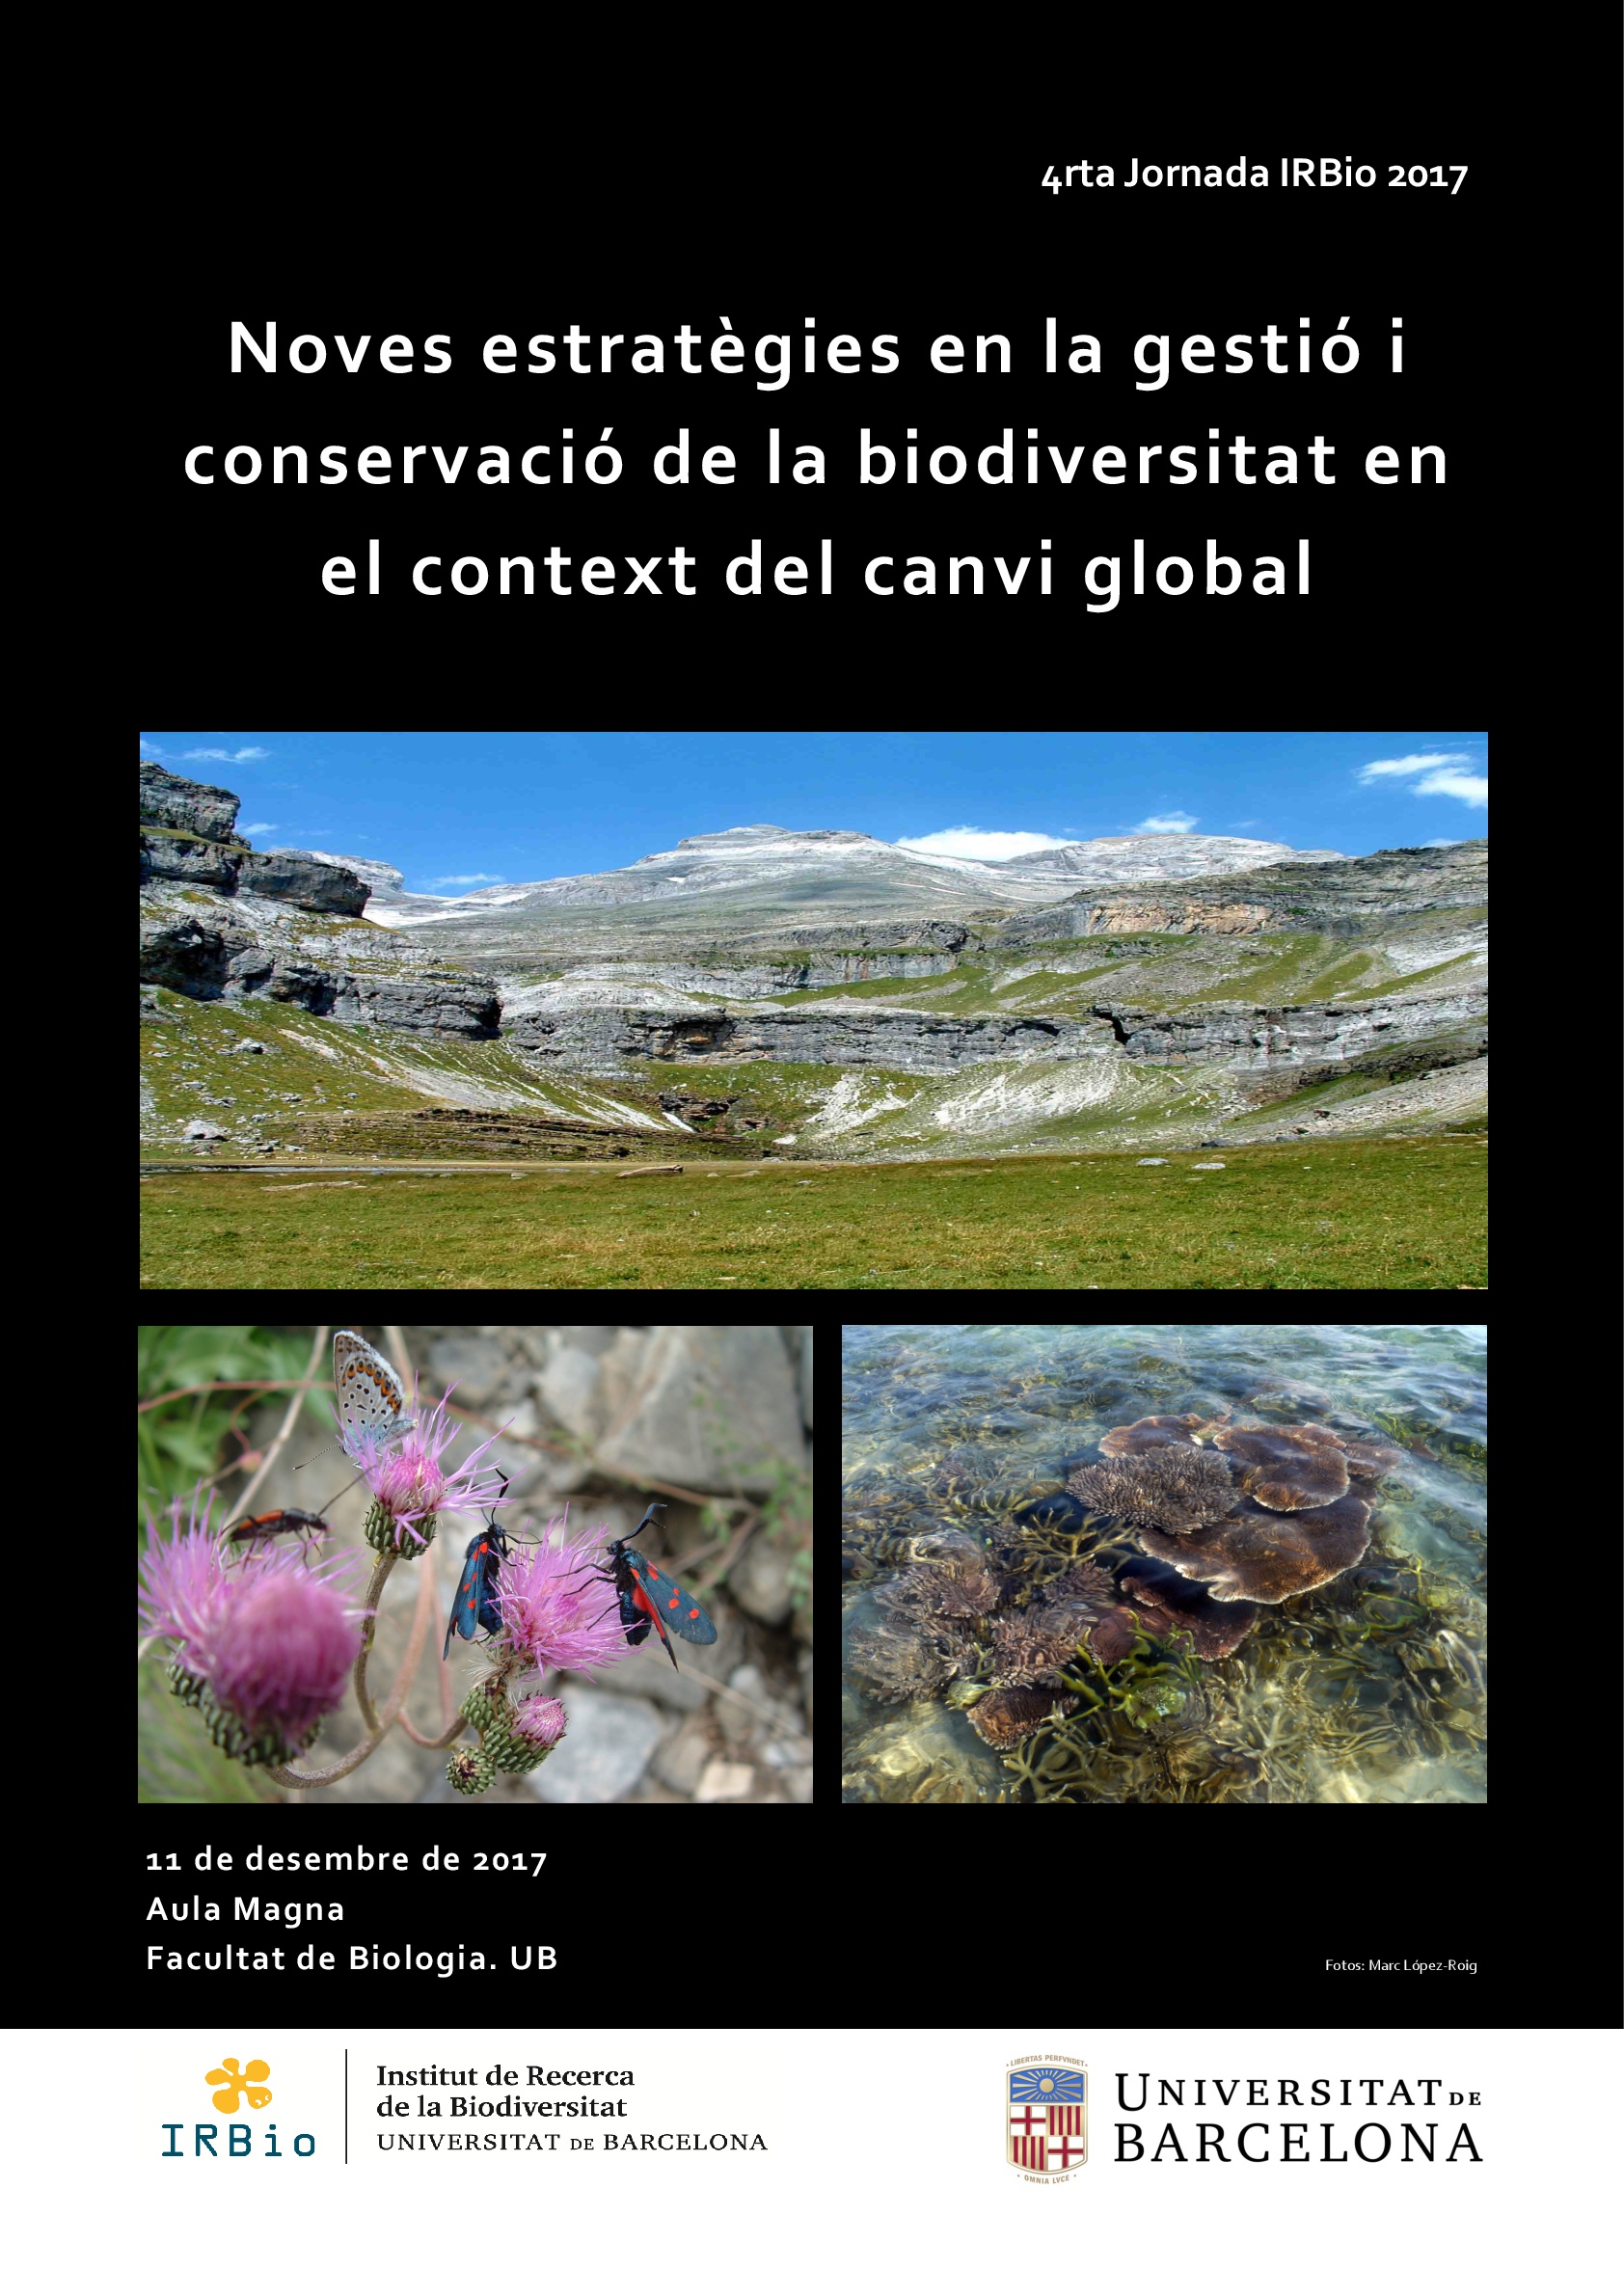 4rt Jornada IRBio nuevas estrategias en la gestión y la conservación de la biodiversidad en el contexto del cambio global